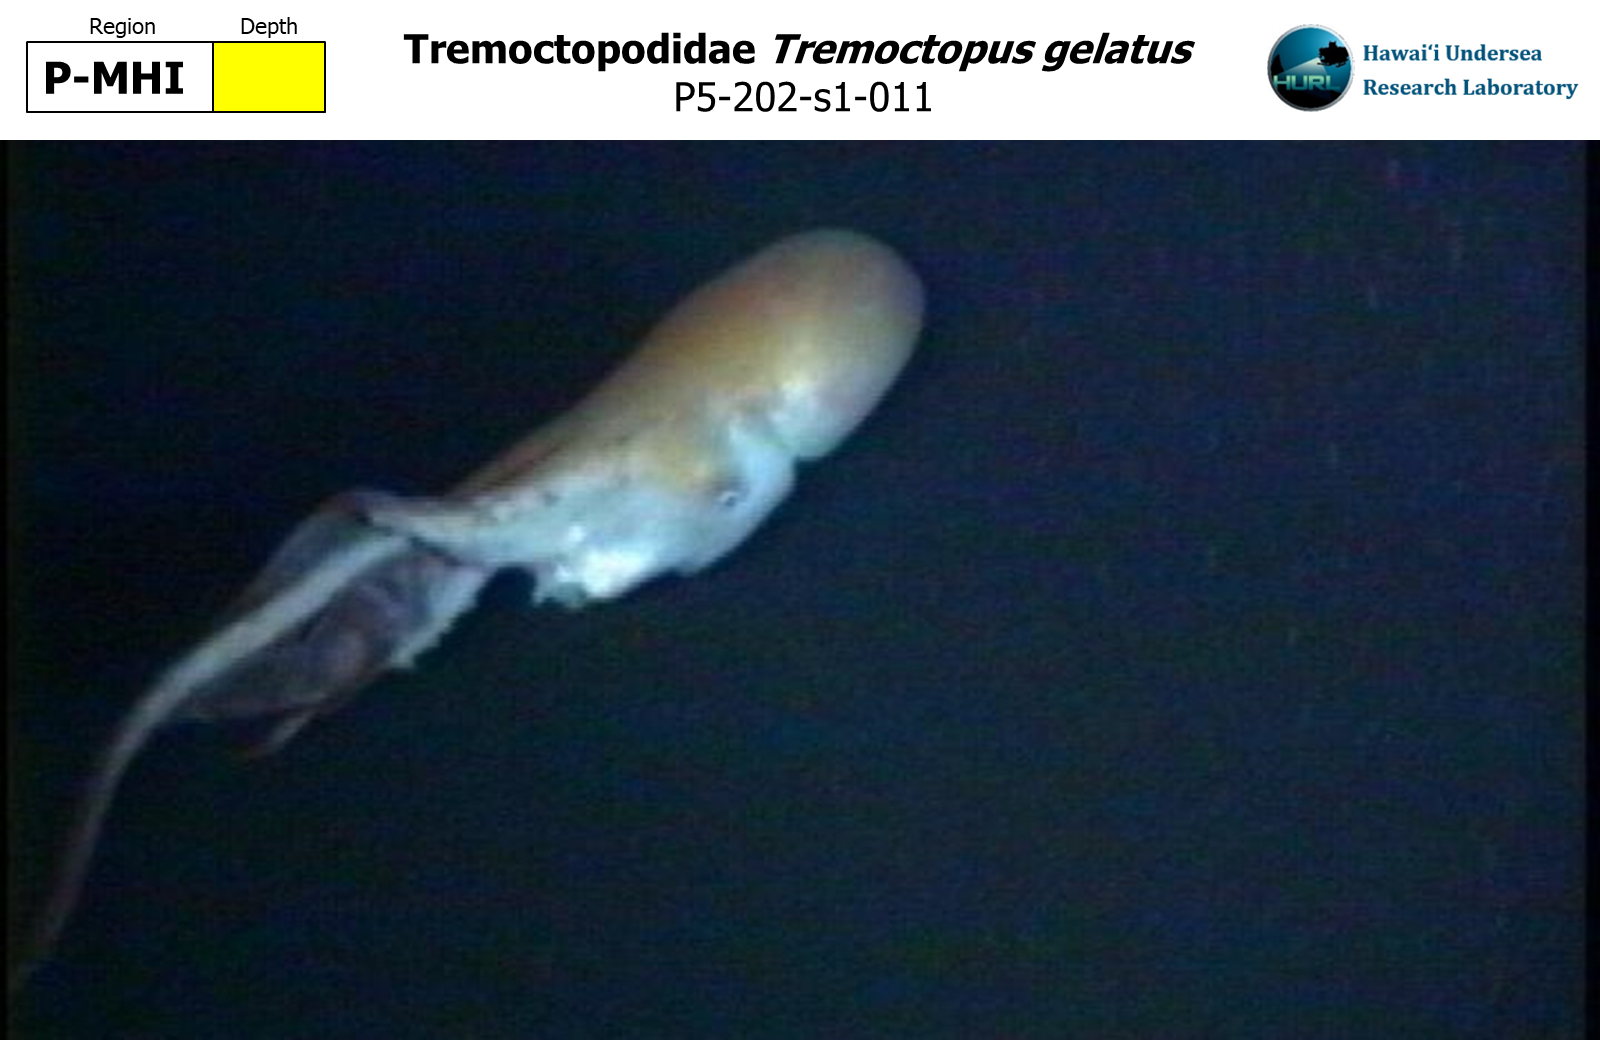 Tremoctopus gelatus